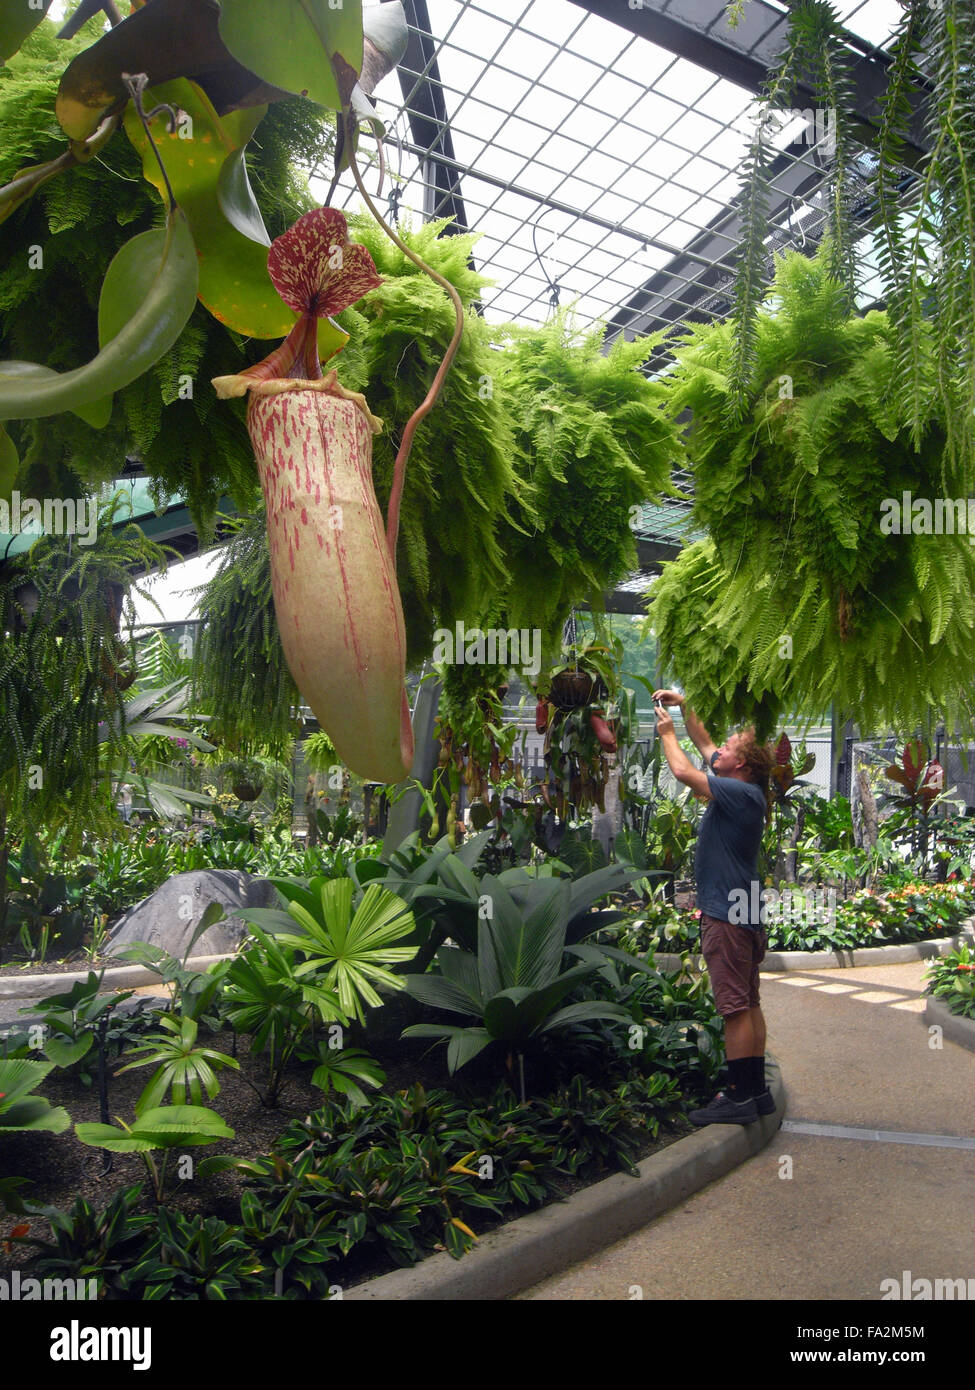 Las plantas jarro (Nepenthes sp.), helechos y vegetación exuberante en el nuevo Conservatorio de Cairns, Flecker Botanic Gardens, Cairns, Q Foto de stock